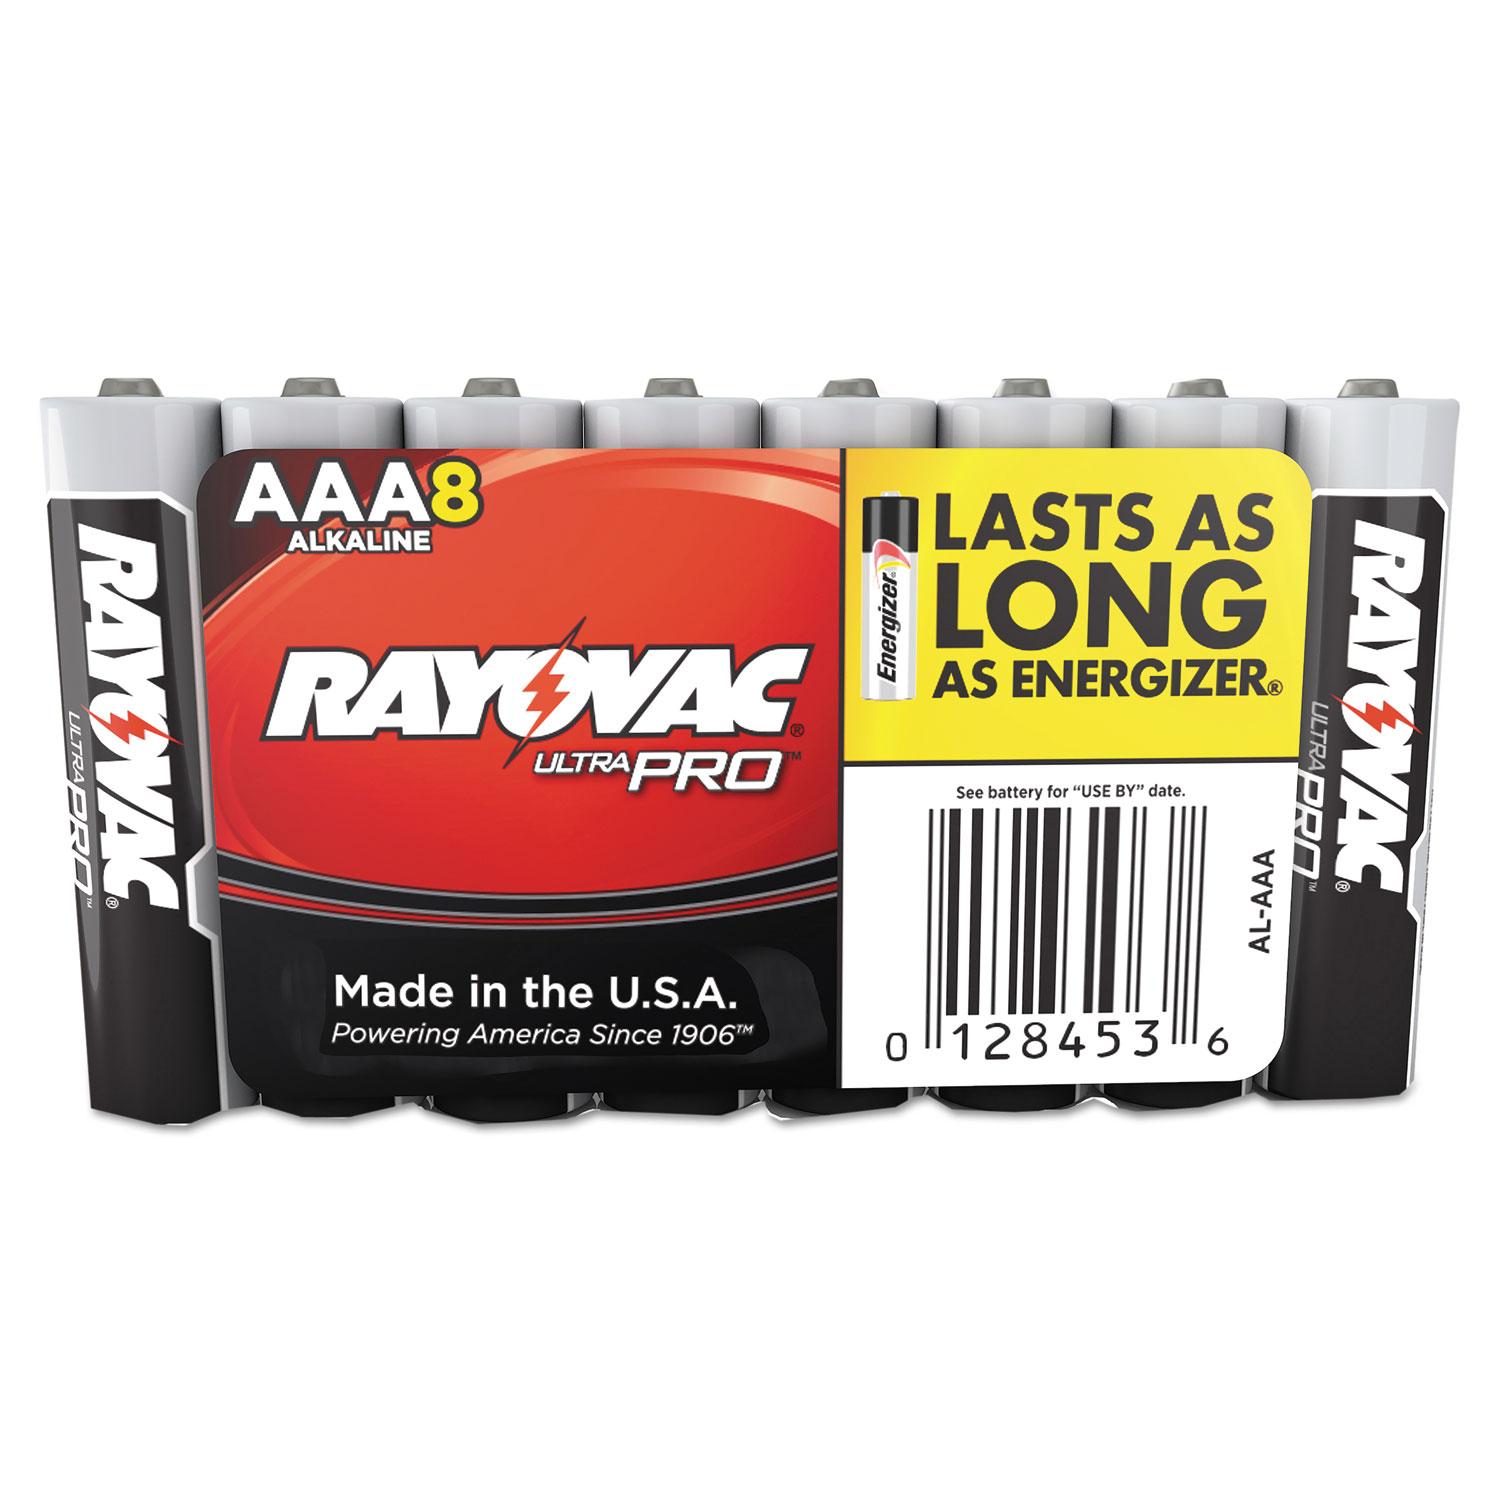 Ultra Pro Alkaline Batteries, AAA, 8/Pack